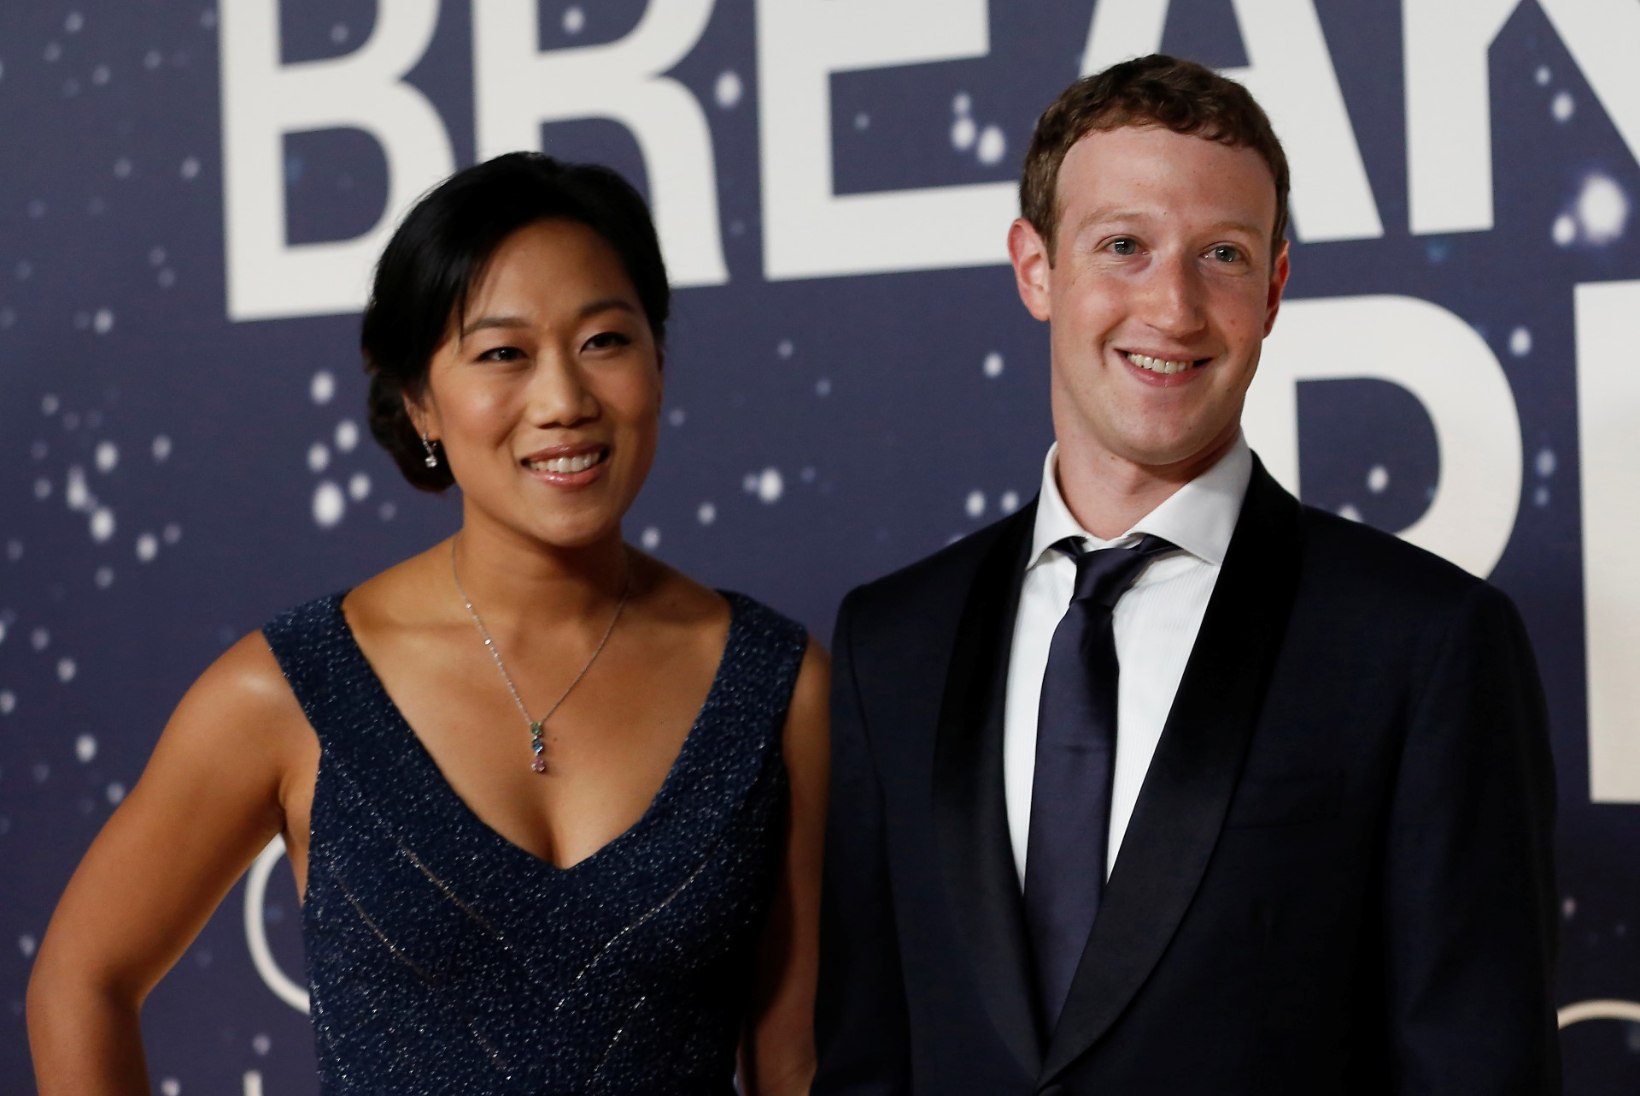 Mark Zuckerberg teatas rõõmusõnumit: tulekul on teine laps